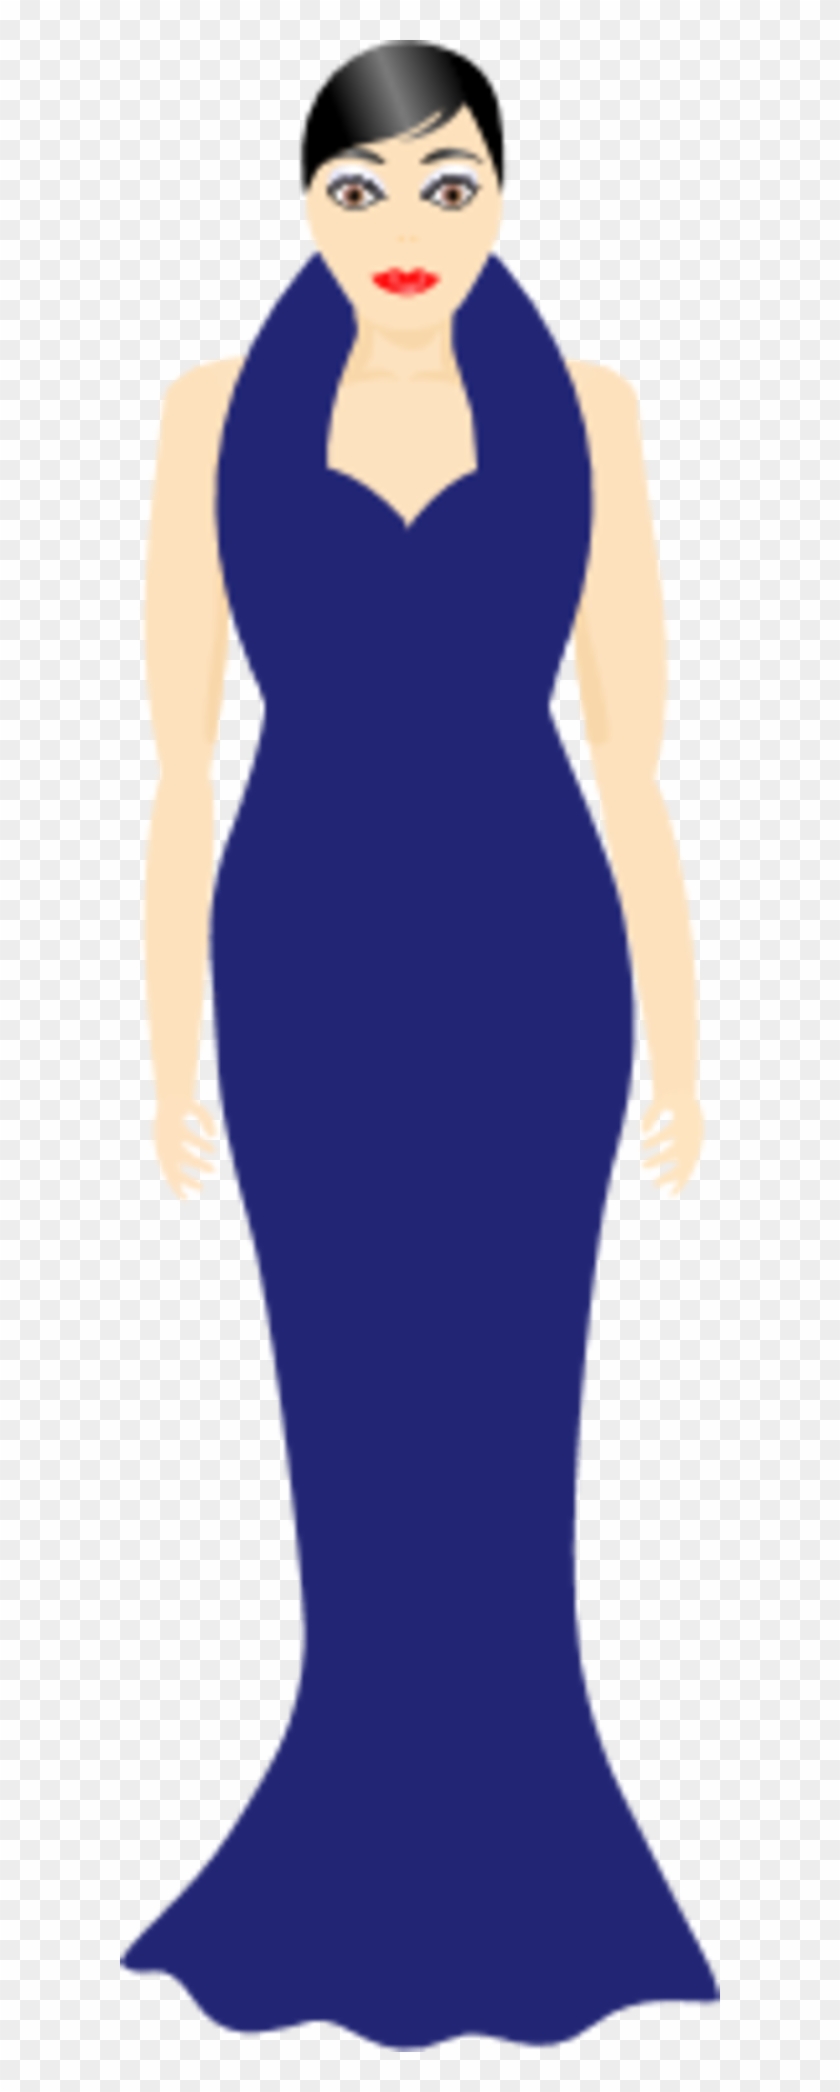 Woman Clipart Dress - Woman Clipart Dress #1307966